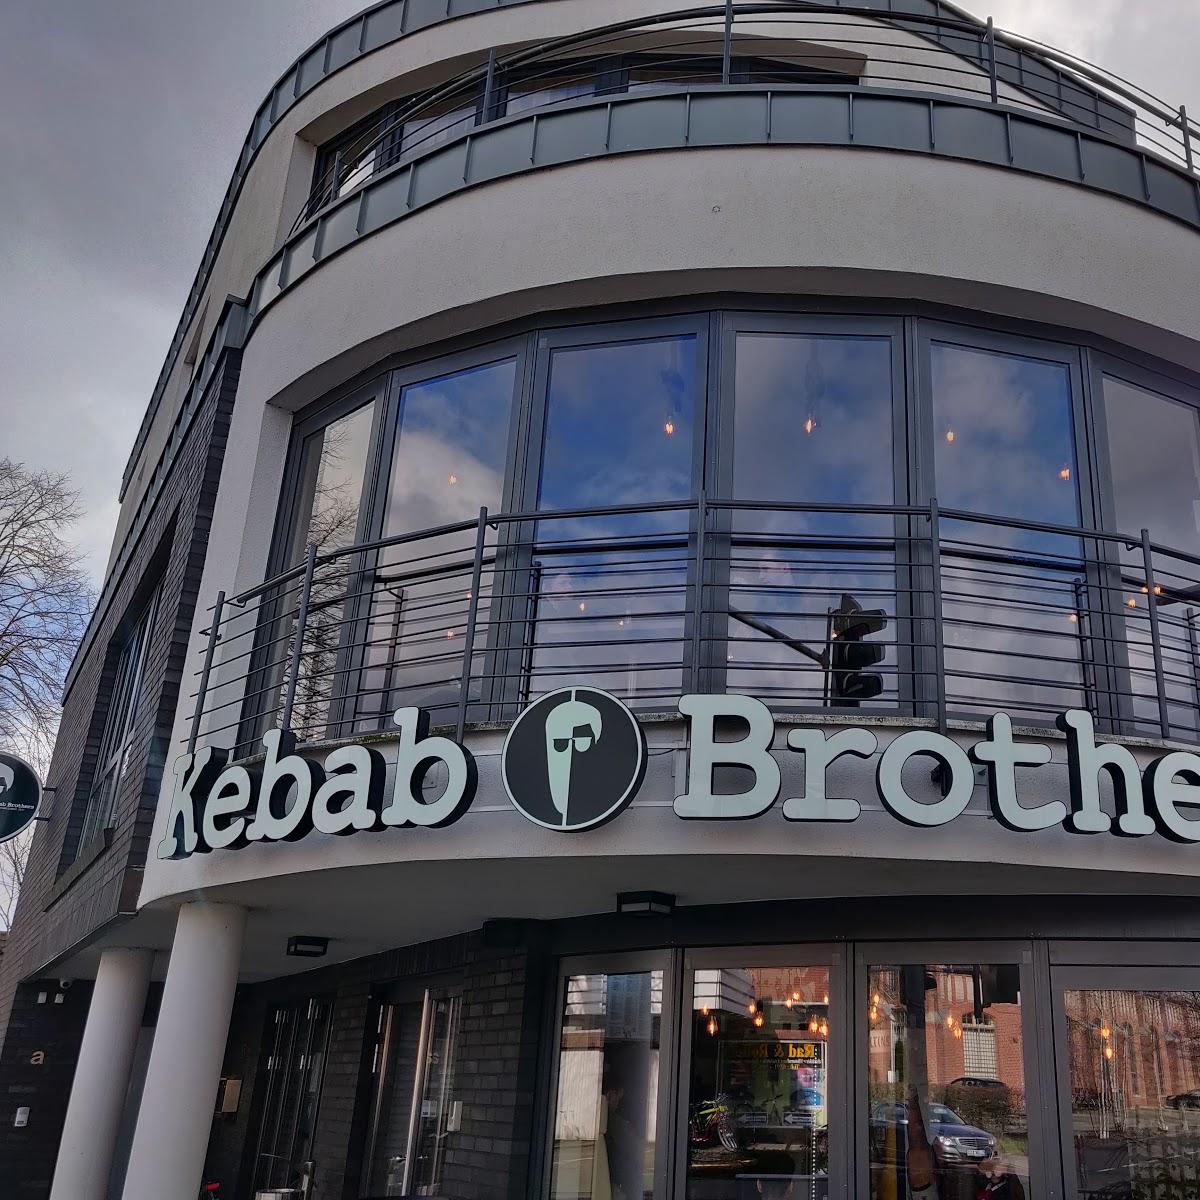 Restaurant "Kebab Brothers" in Lingen (Ems)